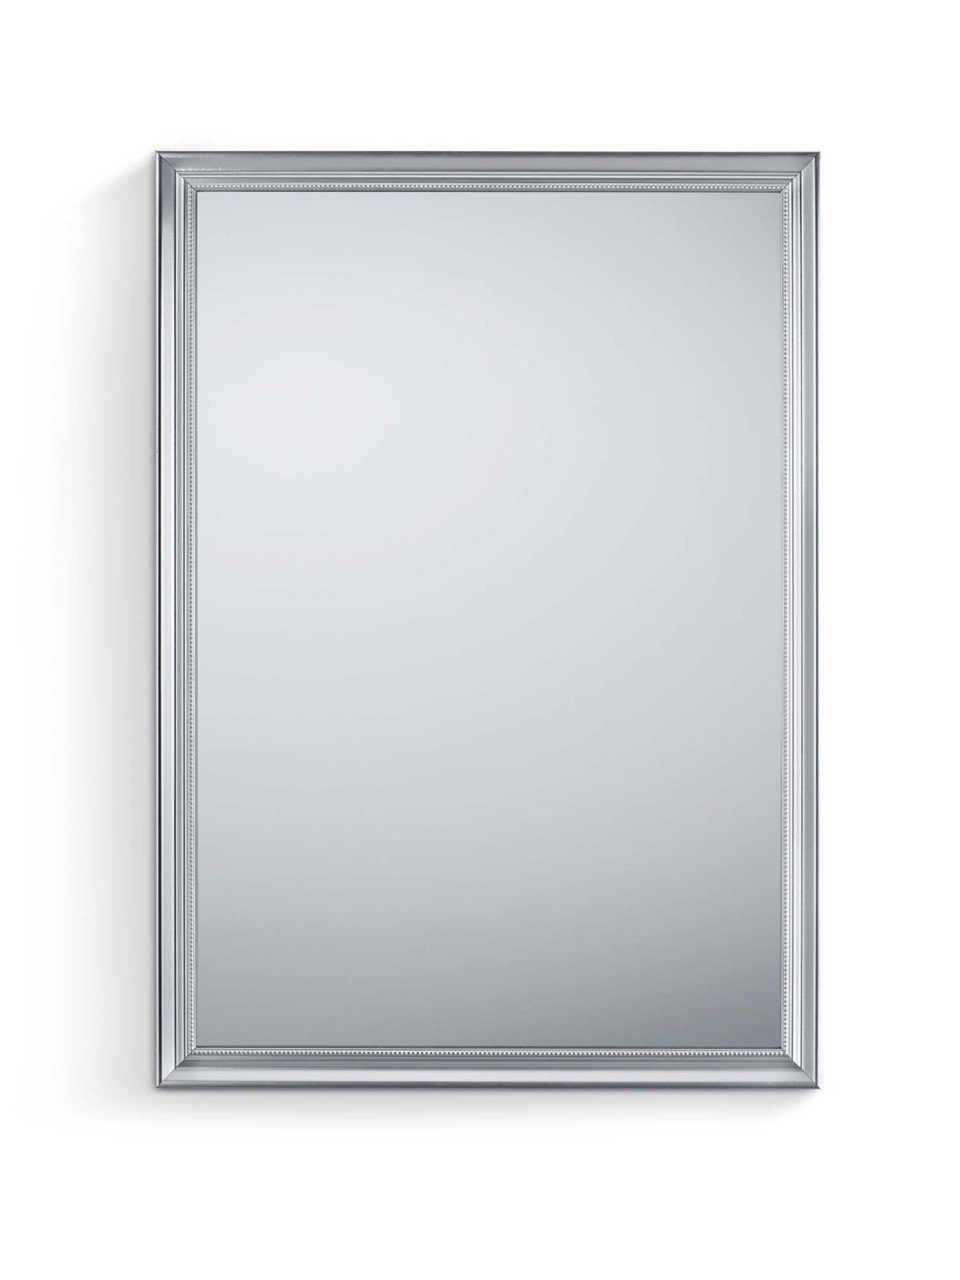 MIRRORS AND MORE Spiegel Frieda Rahmenspiegel Silber silberfarben | Silberfarbig